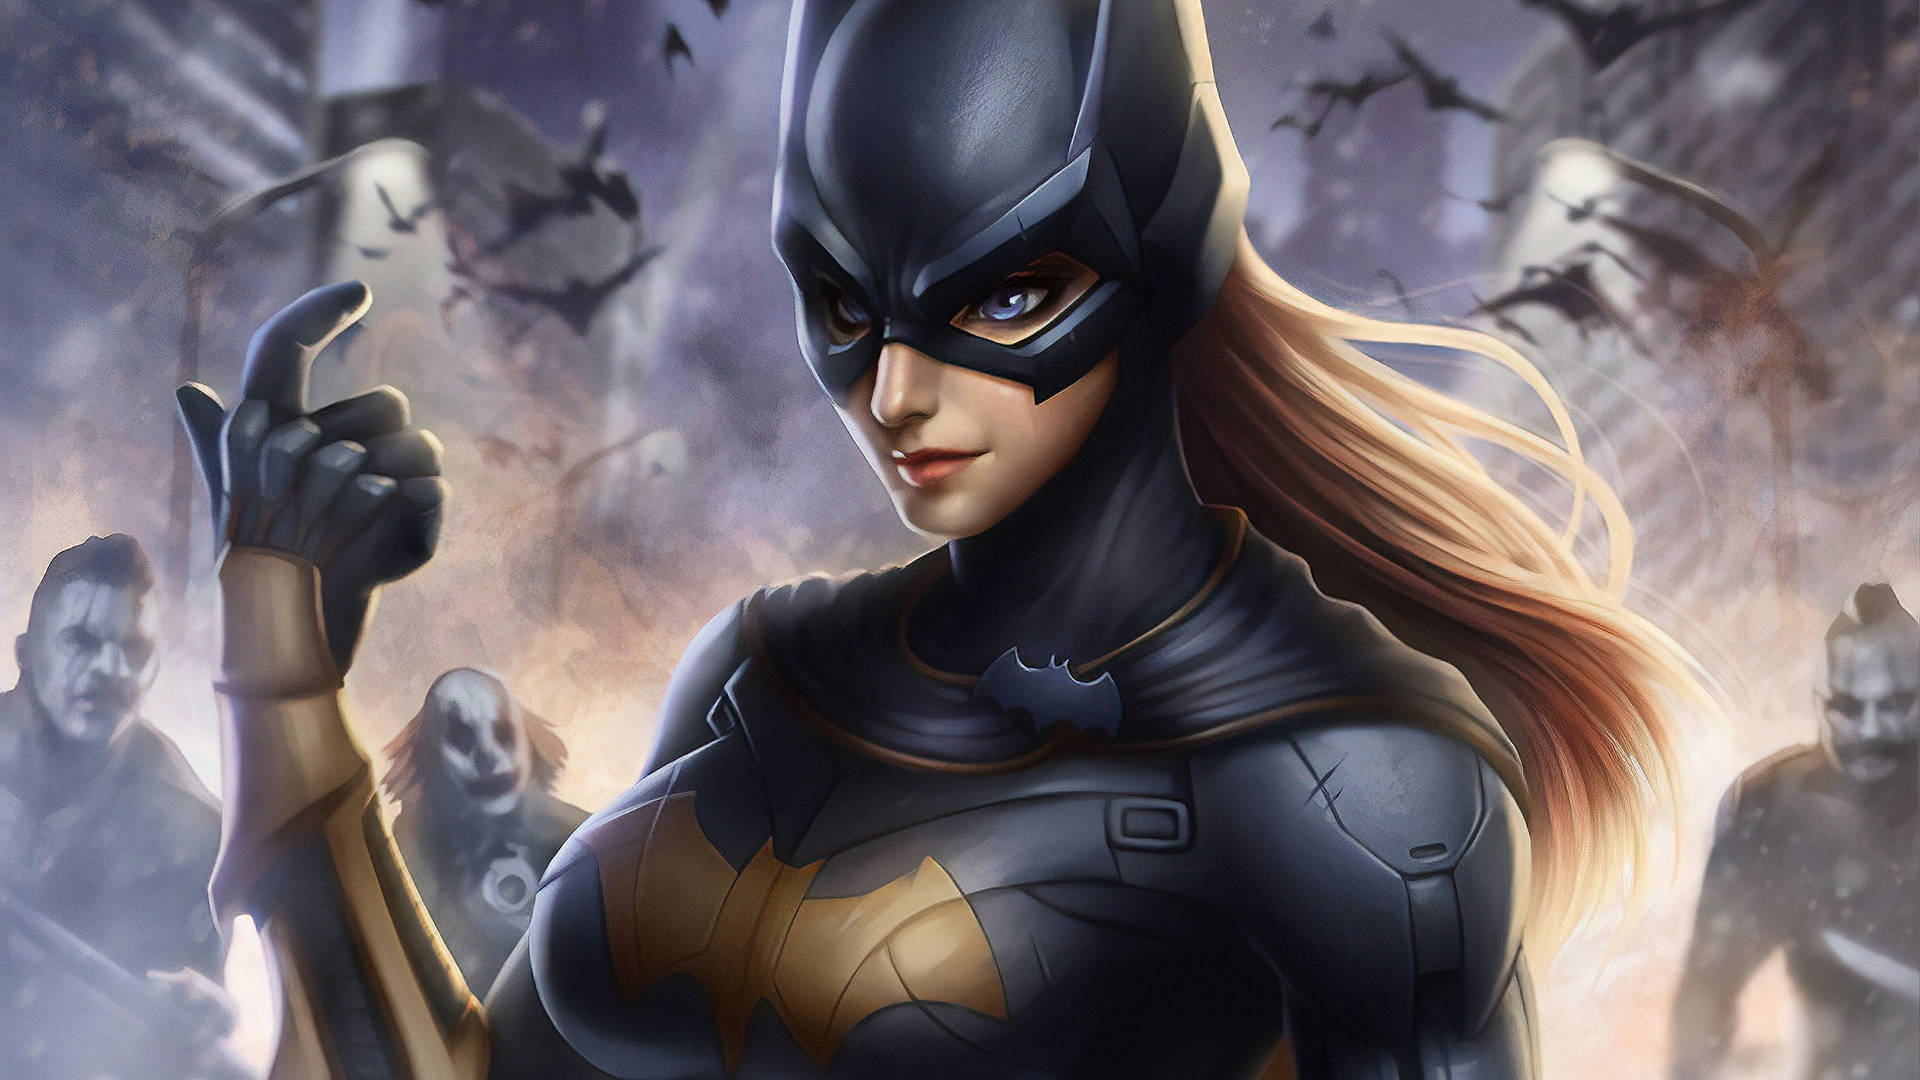 DC Batgirl In Black Superhero Suit Wallpaper